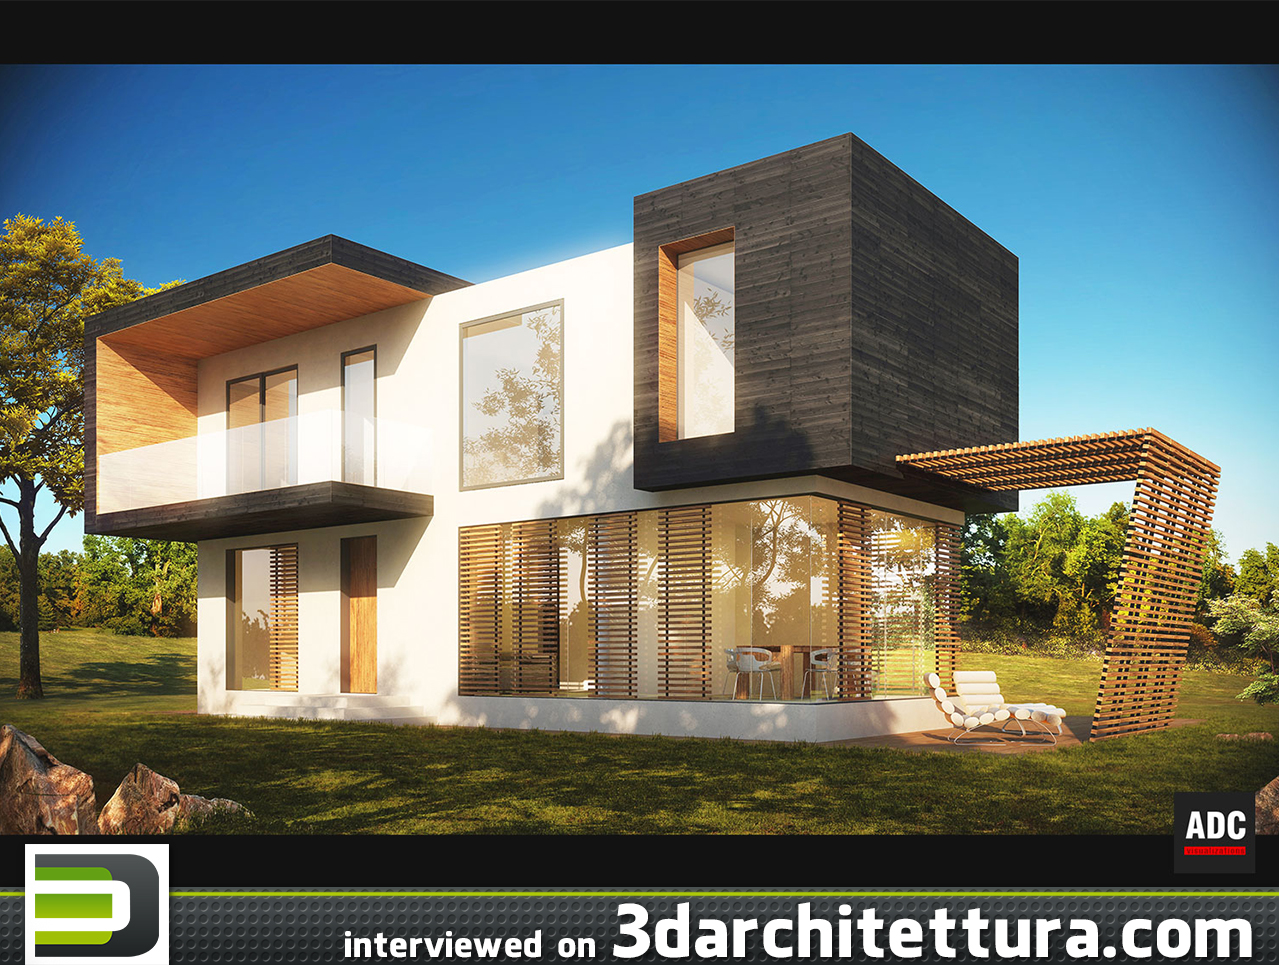 Andrea De Cet interviewed on 3D Architettura: render, 3d, cg, design, architecture